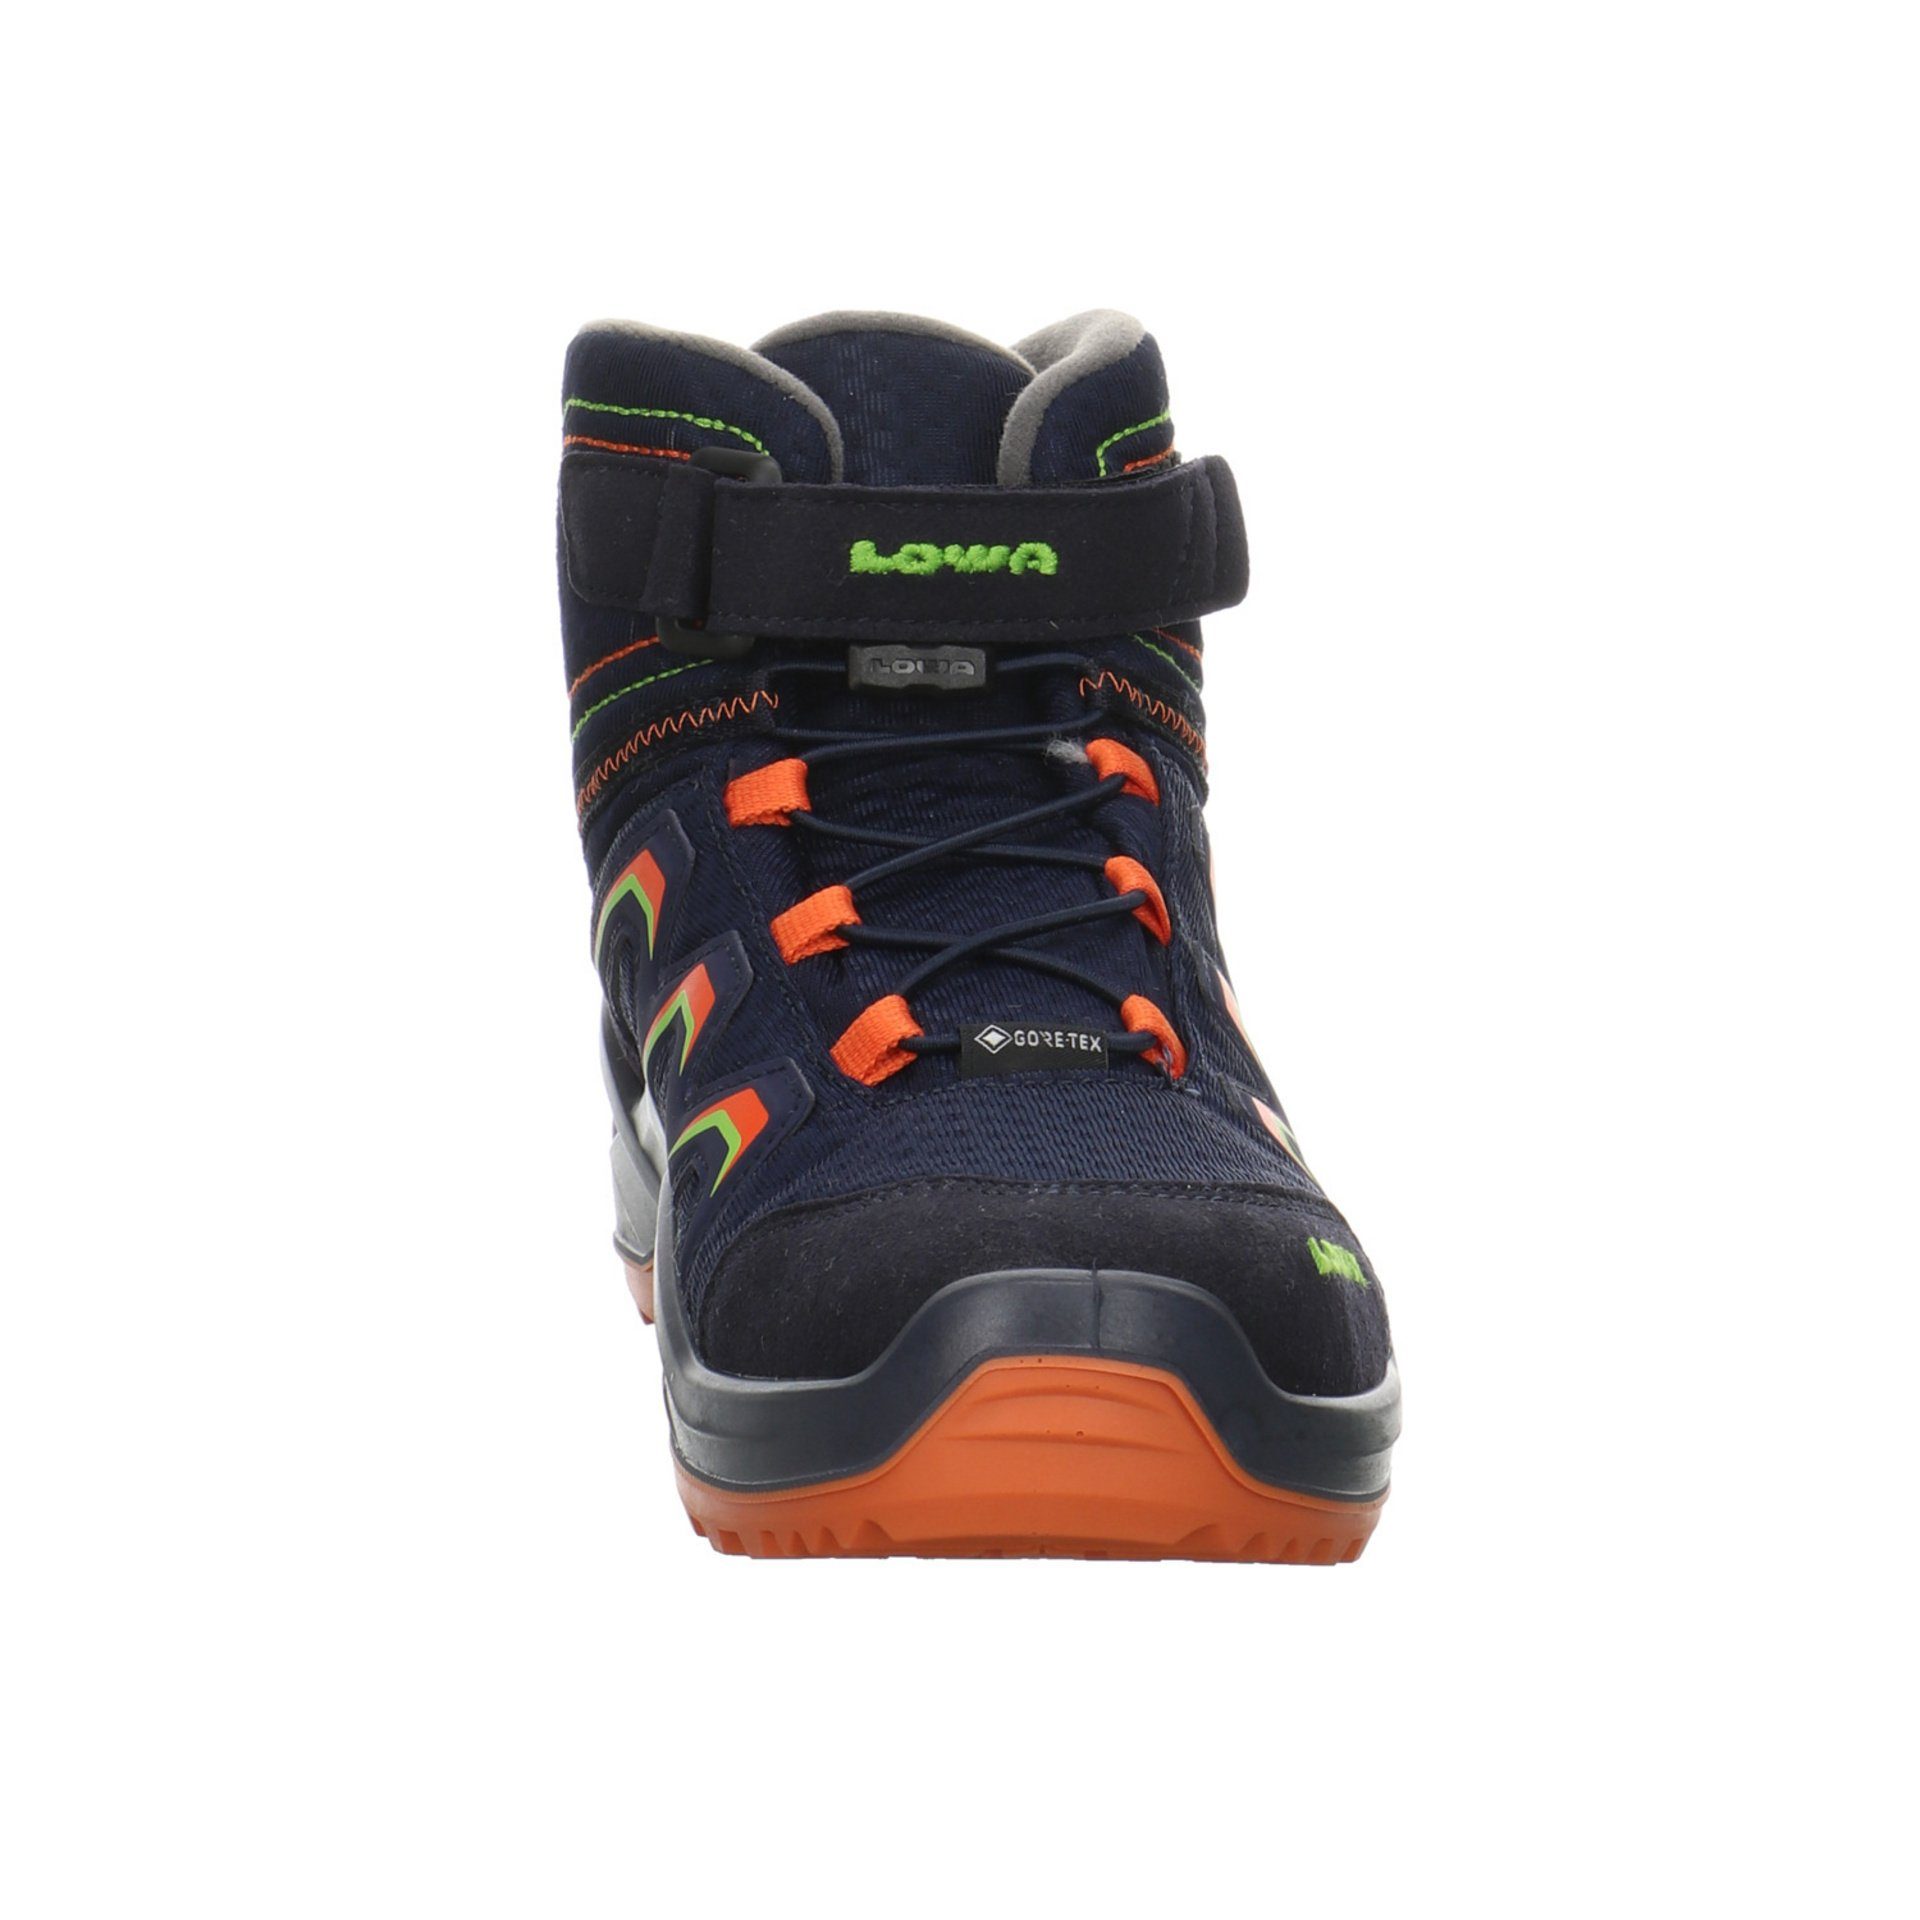 Lowa Jungen Stiefel Stiefel Warm Textil GTX Boots Schuhe navy/orange Maddox